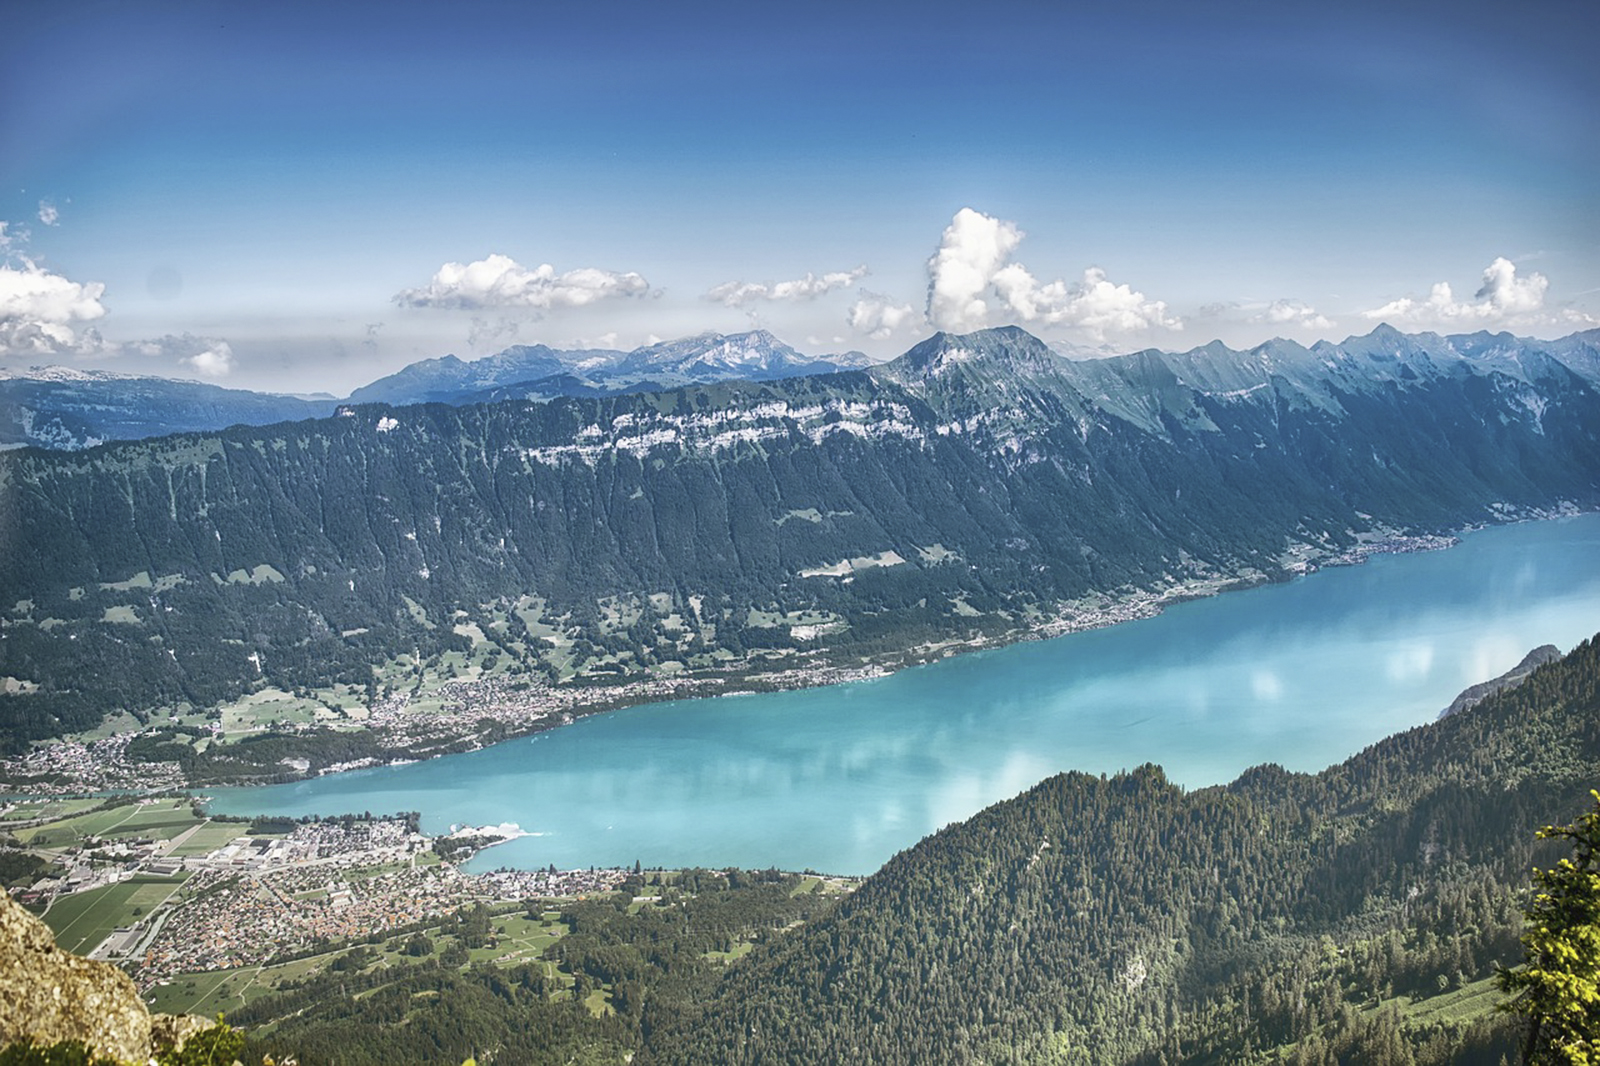 Le village de Brienz, en Suisse, est menacé par un important glissement de terrain. Les habitants doivent évacuer. © Pixabay